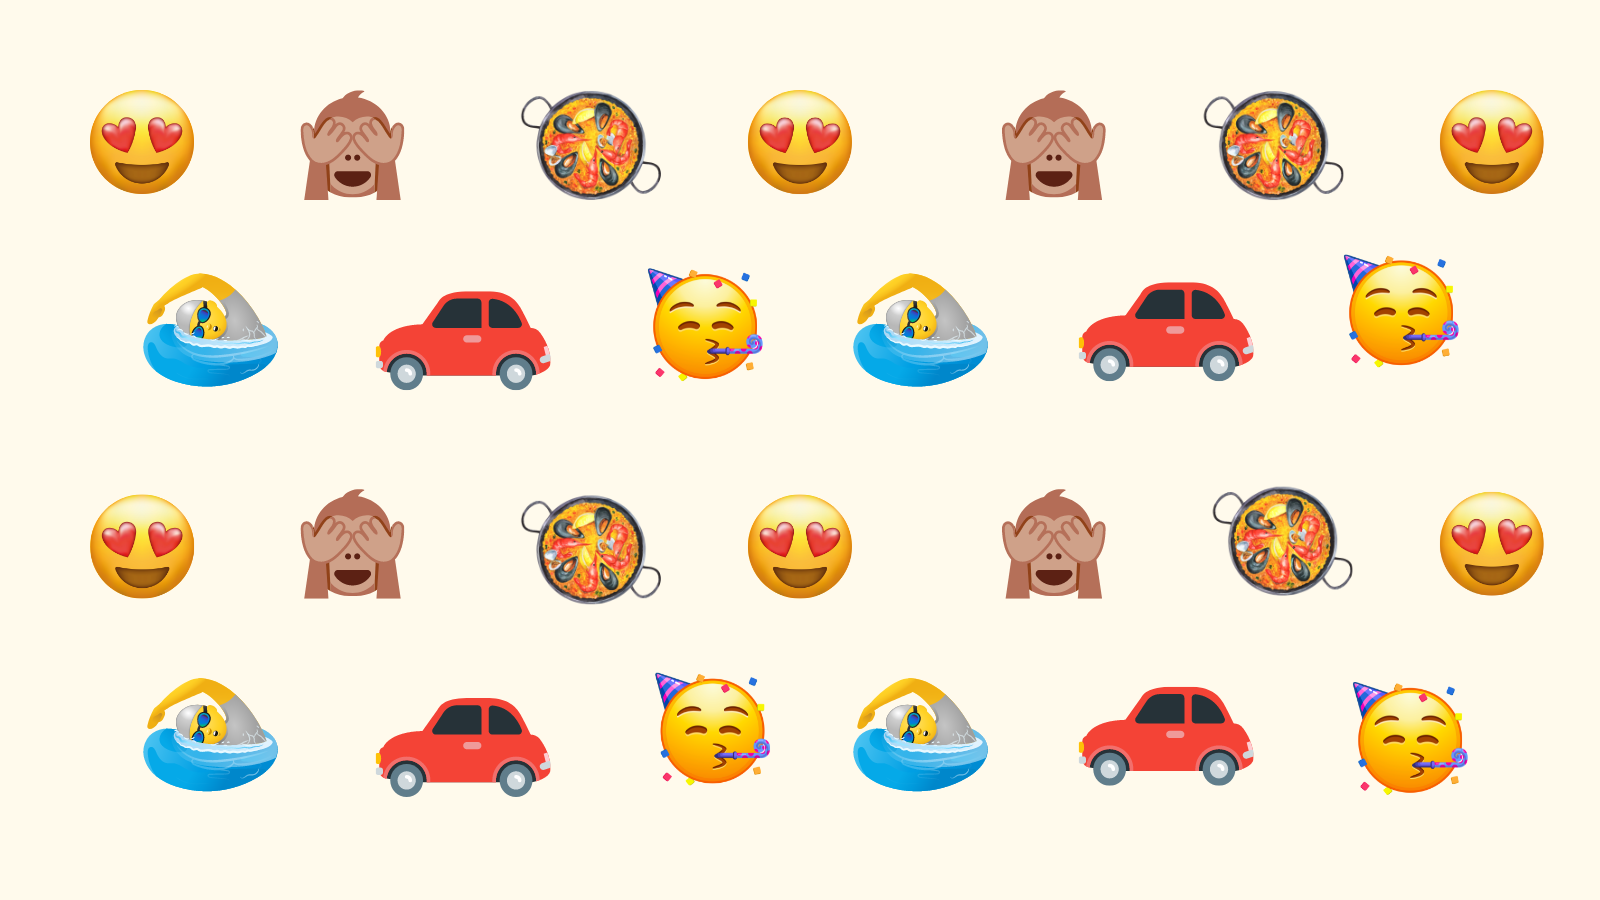 17 de juliol: Dia Mundial de l’Emoji